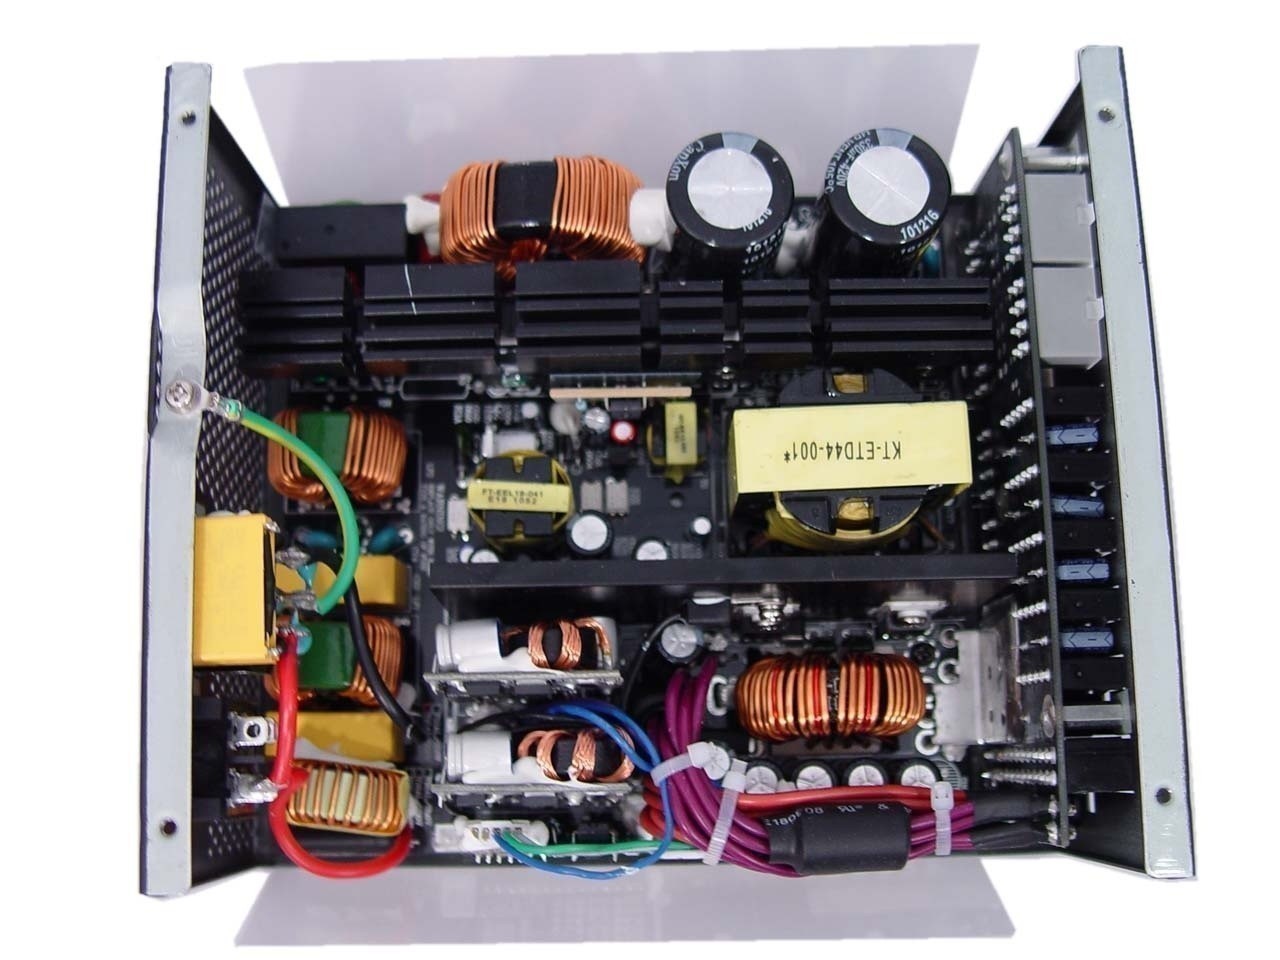 OCZ ZX 850 Series 850 Watt Power Supply Review